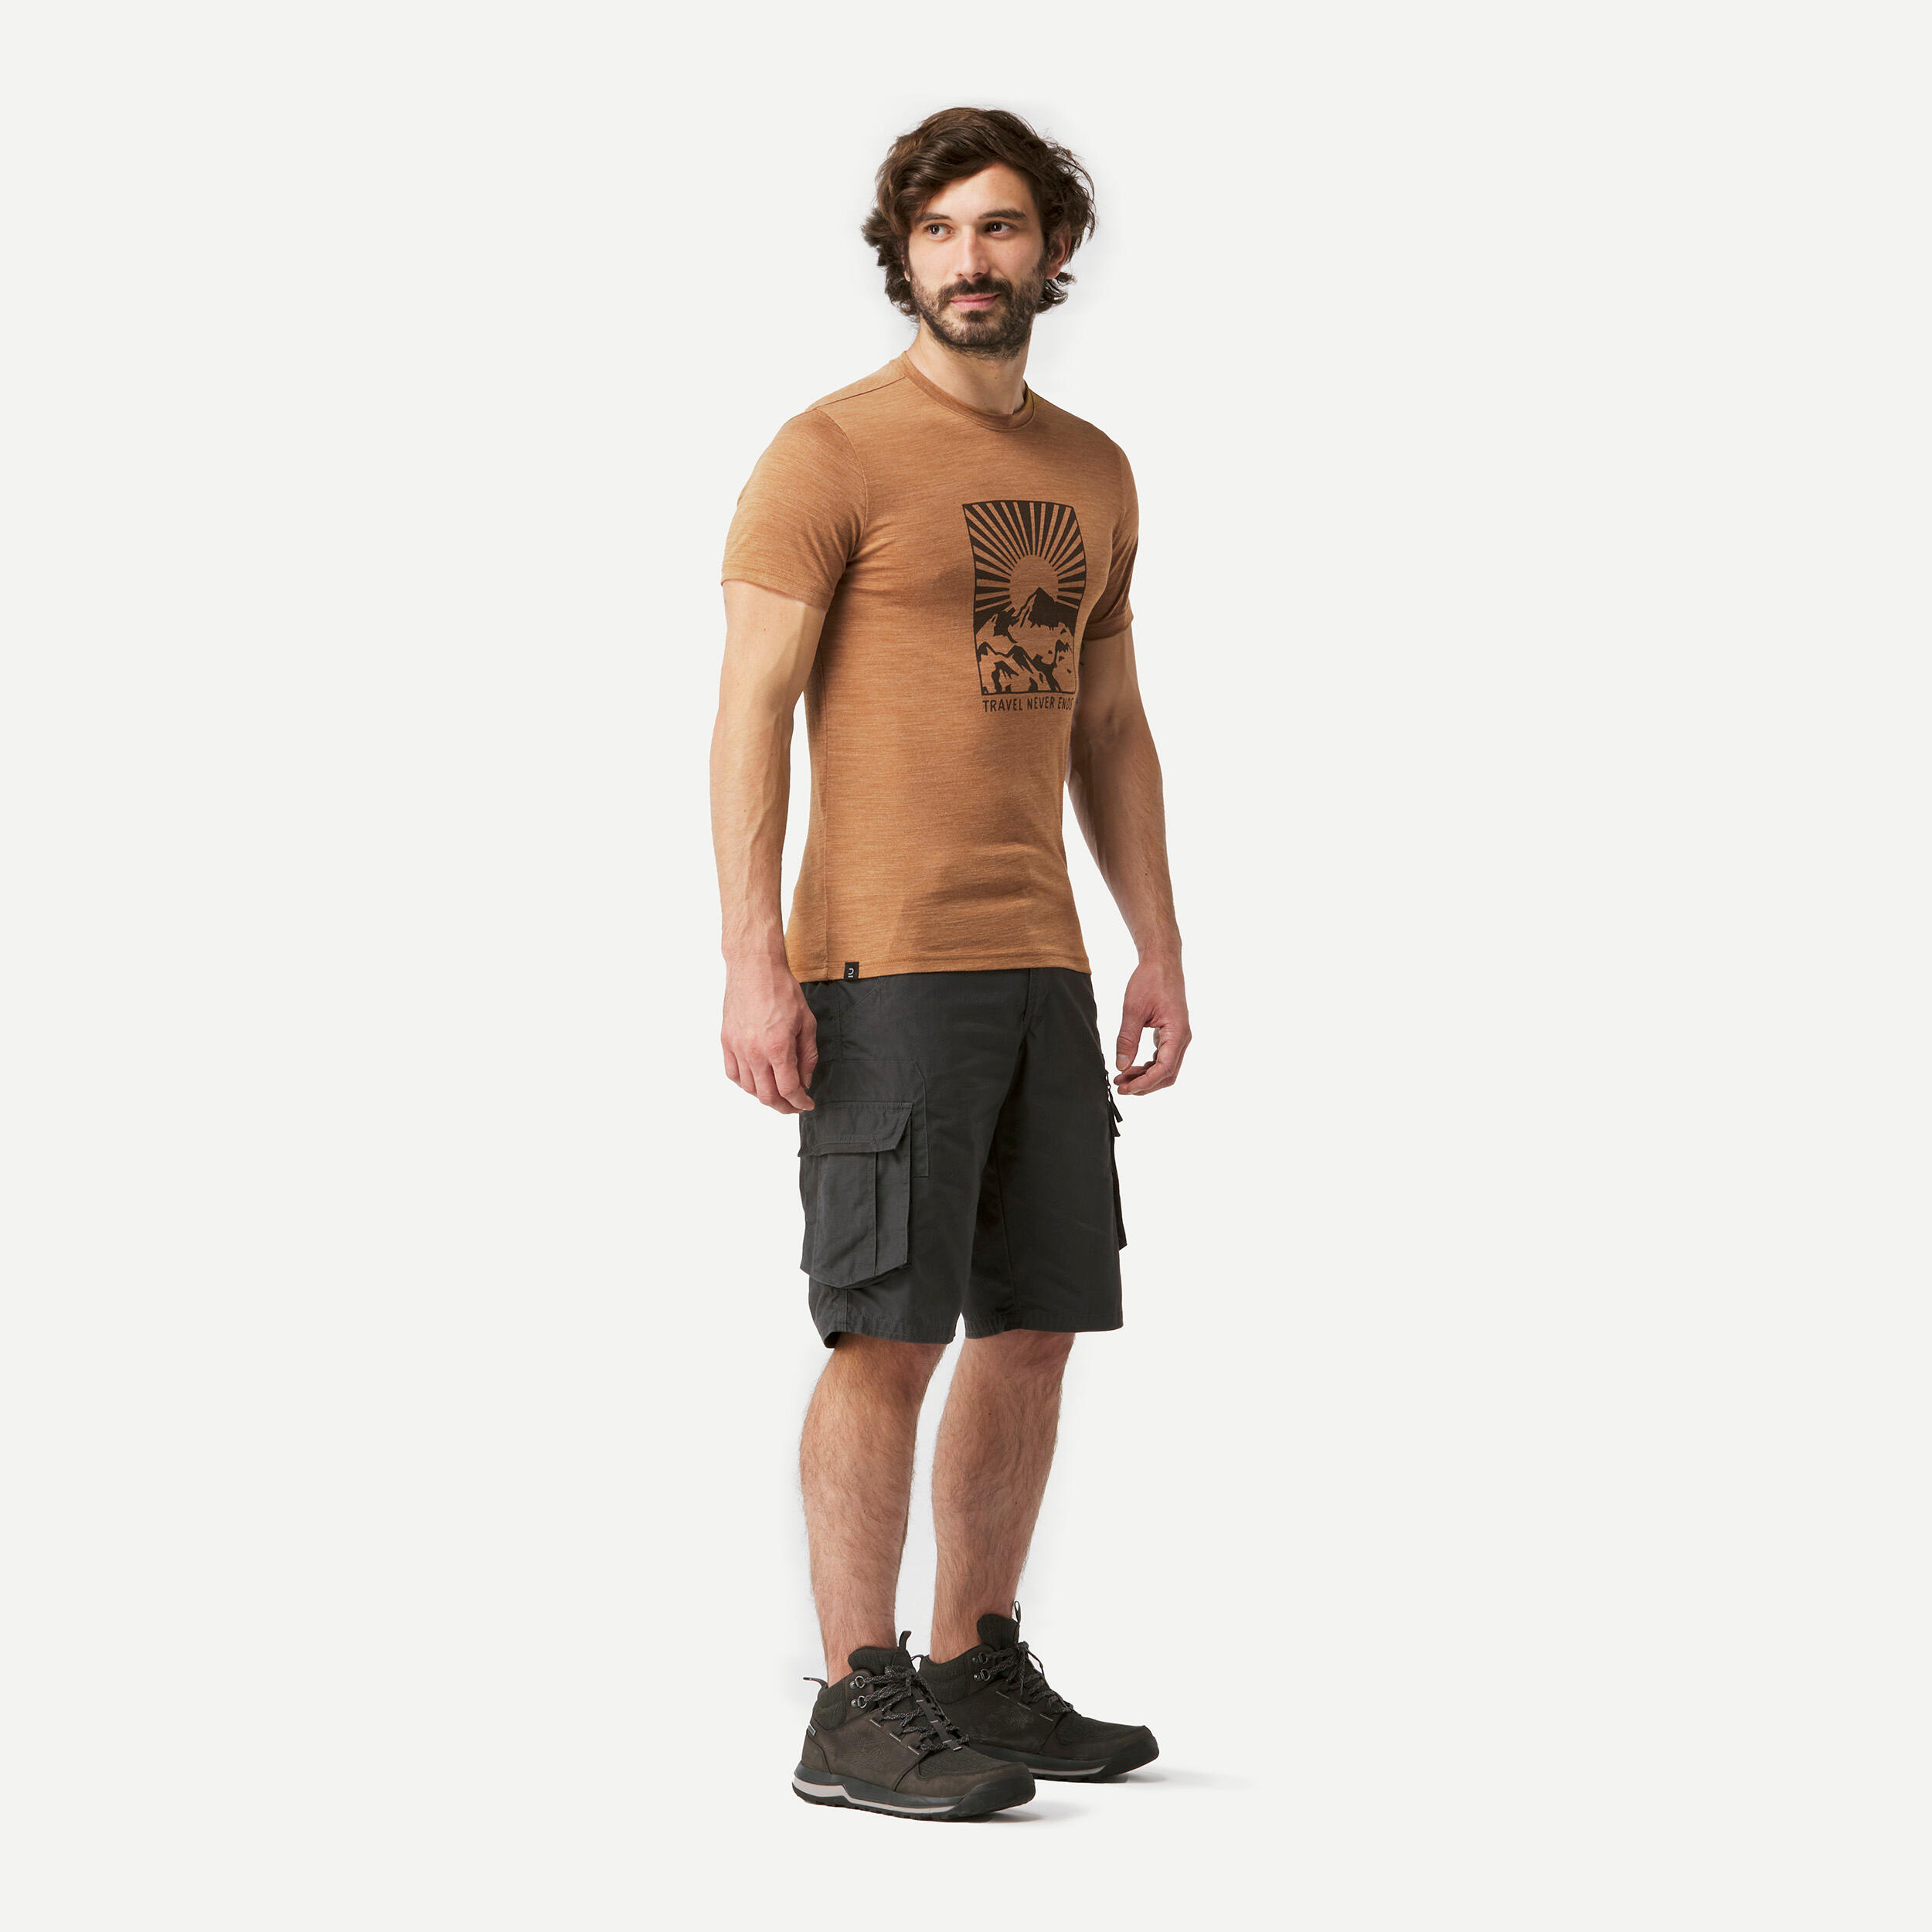 Trekking Travel Merino Wool T-Shirt - TRAVEL 100 Brown 4/6